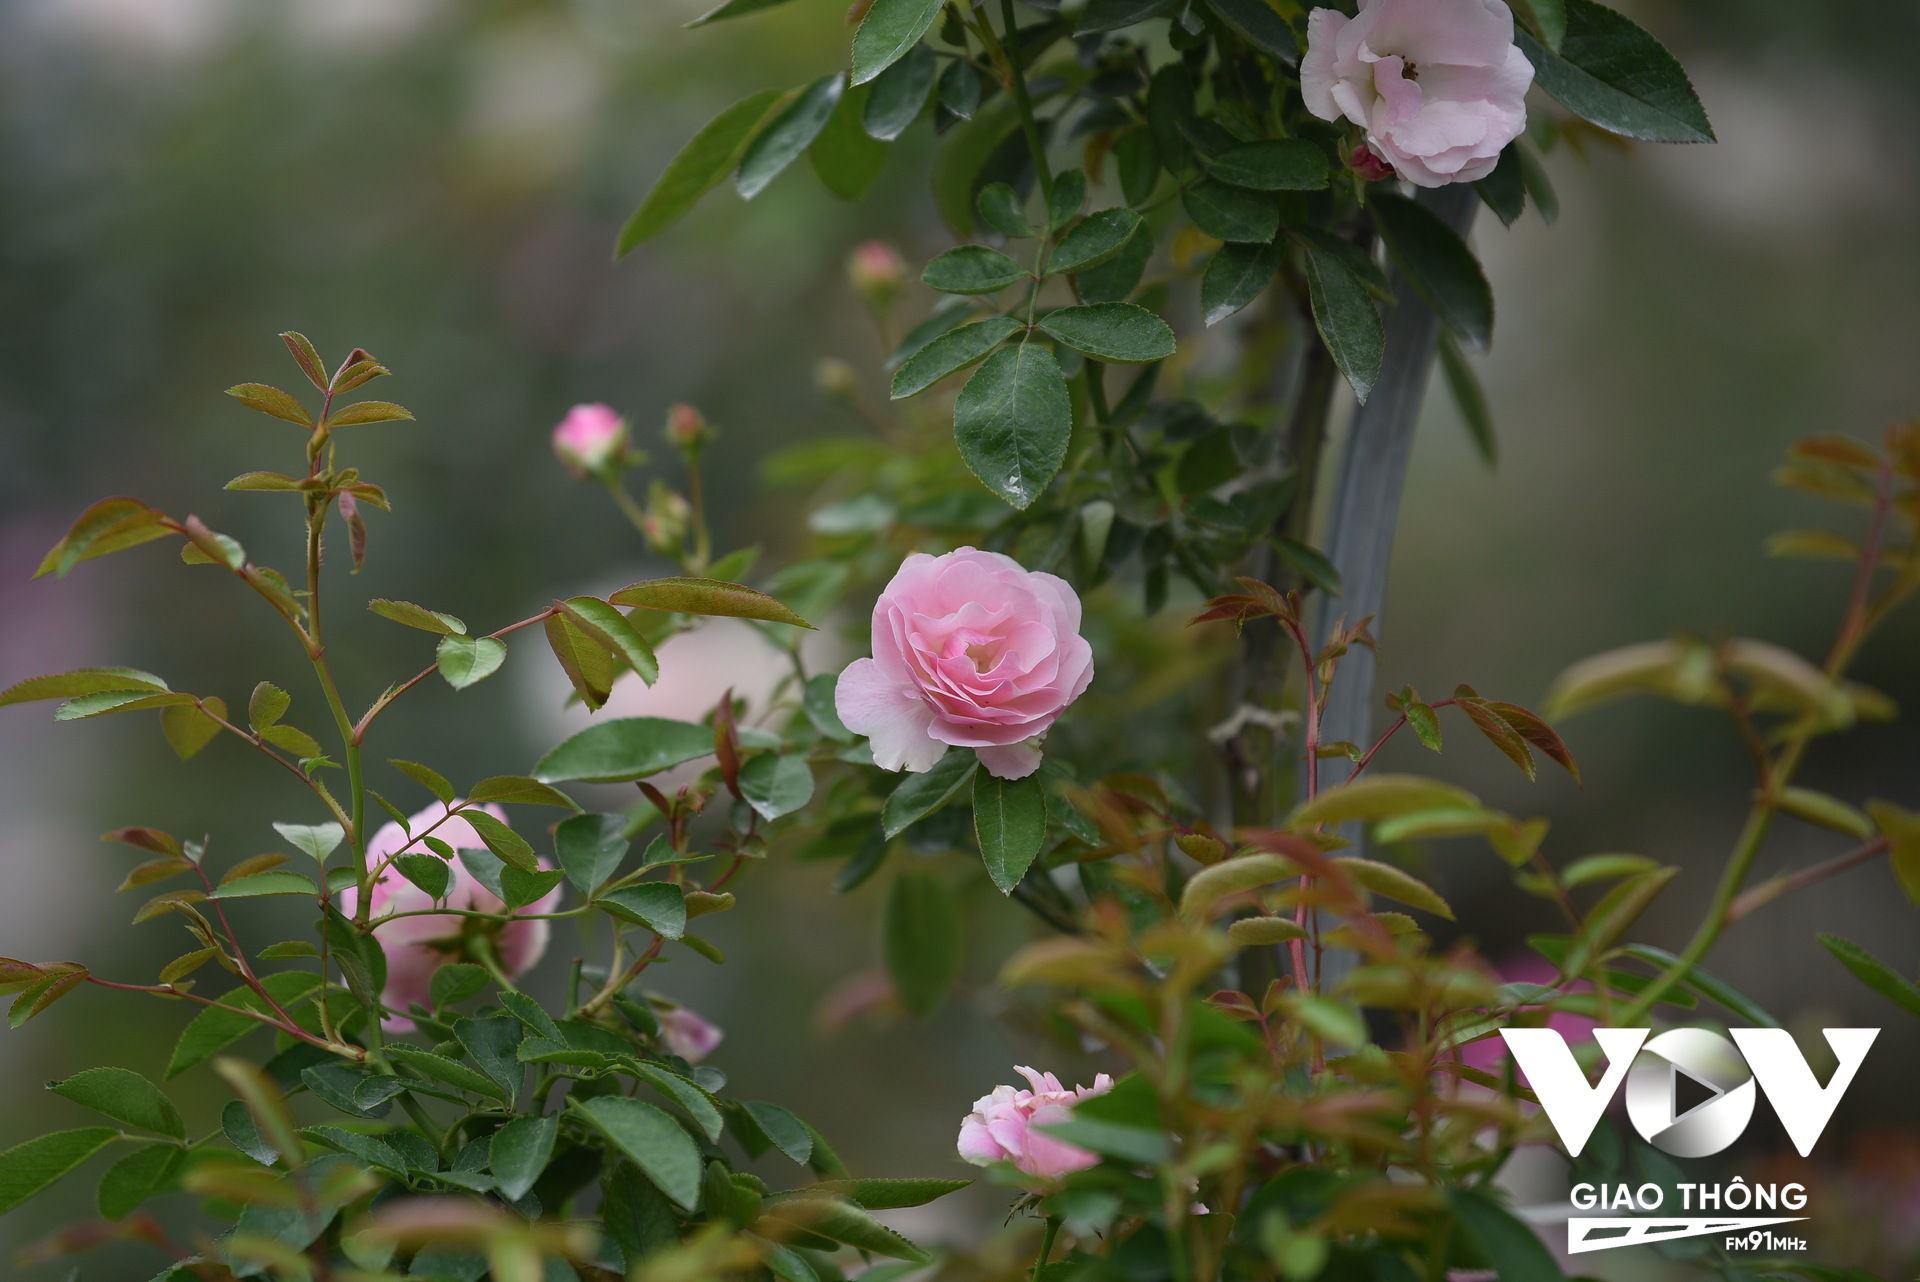 Đây cũng là lần đầu tiên huyện Mê Linh tổ chức Chương trình Lễ hội hoa nhằm trưng bày, giới thiệu các loại hoa, sản phẩm từ hoa, cây cảnh, nghệ thuật sắp đặt, trang trí hoa, cây cảnh của các nghệ nhân trồng hoa huyện Mê Linh tới các đại biểu, Nhân dân và du khách thập phương.